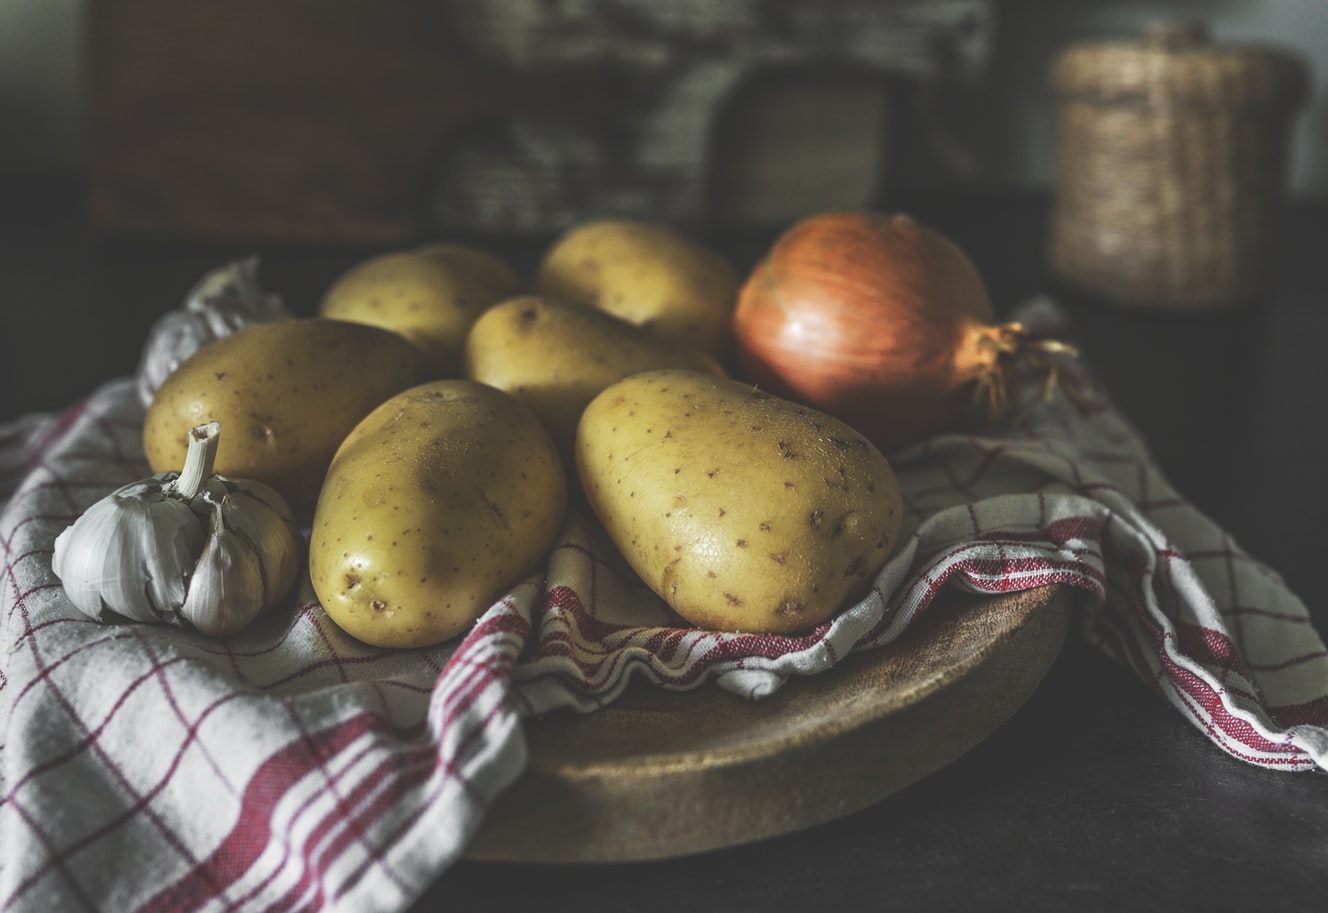 Πώς να διατηρήσω τις πατάτες: Tips για να μην τις πετάς συνεχώς